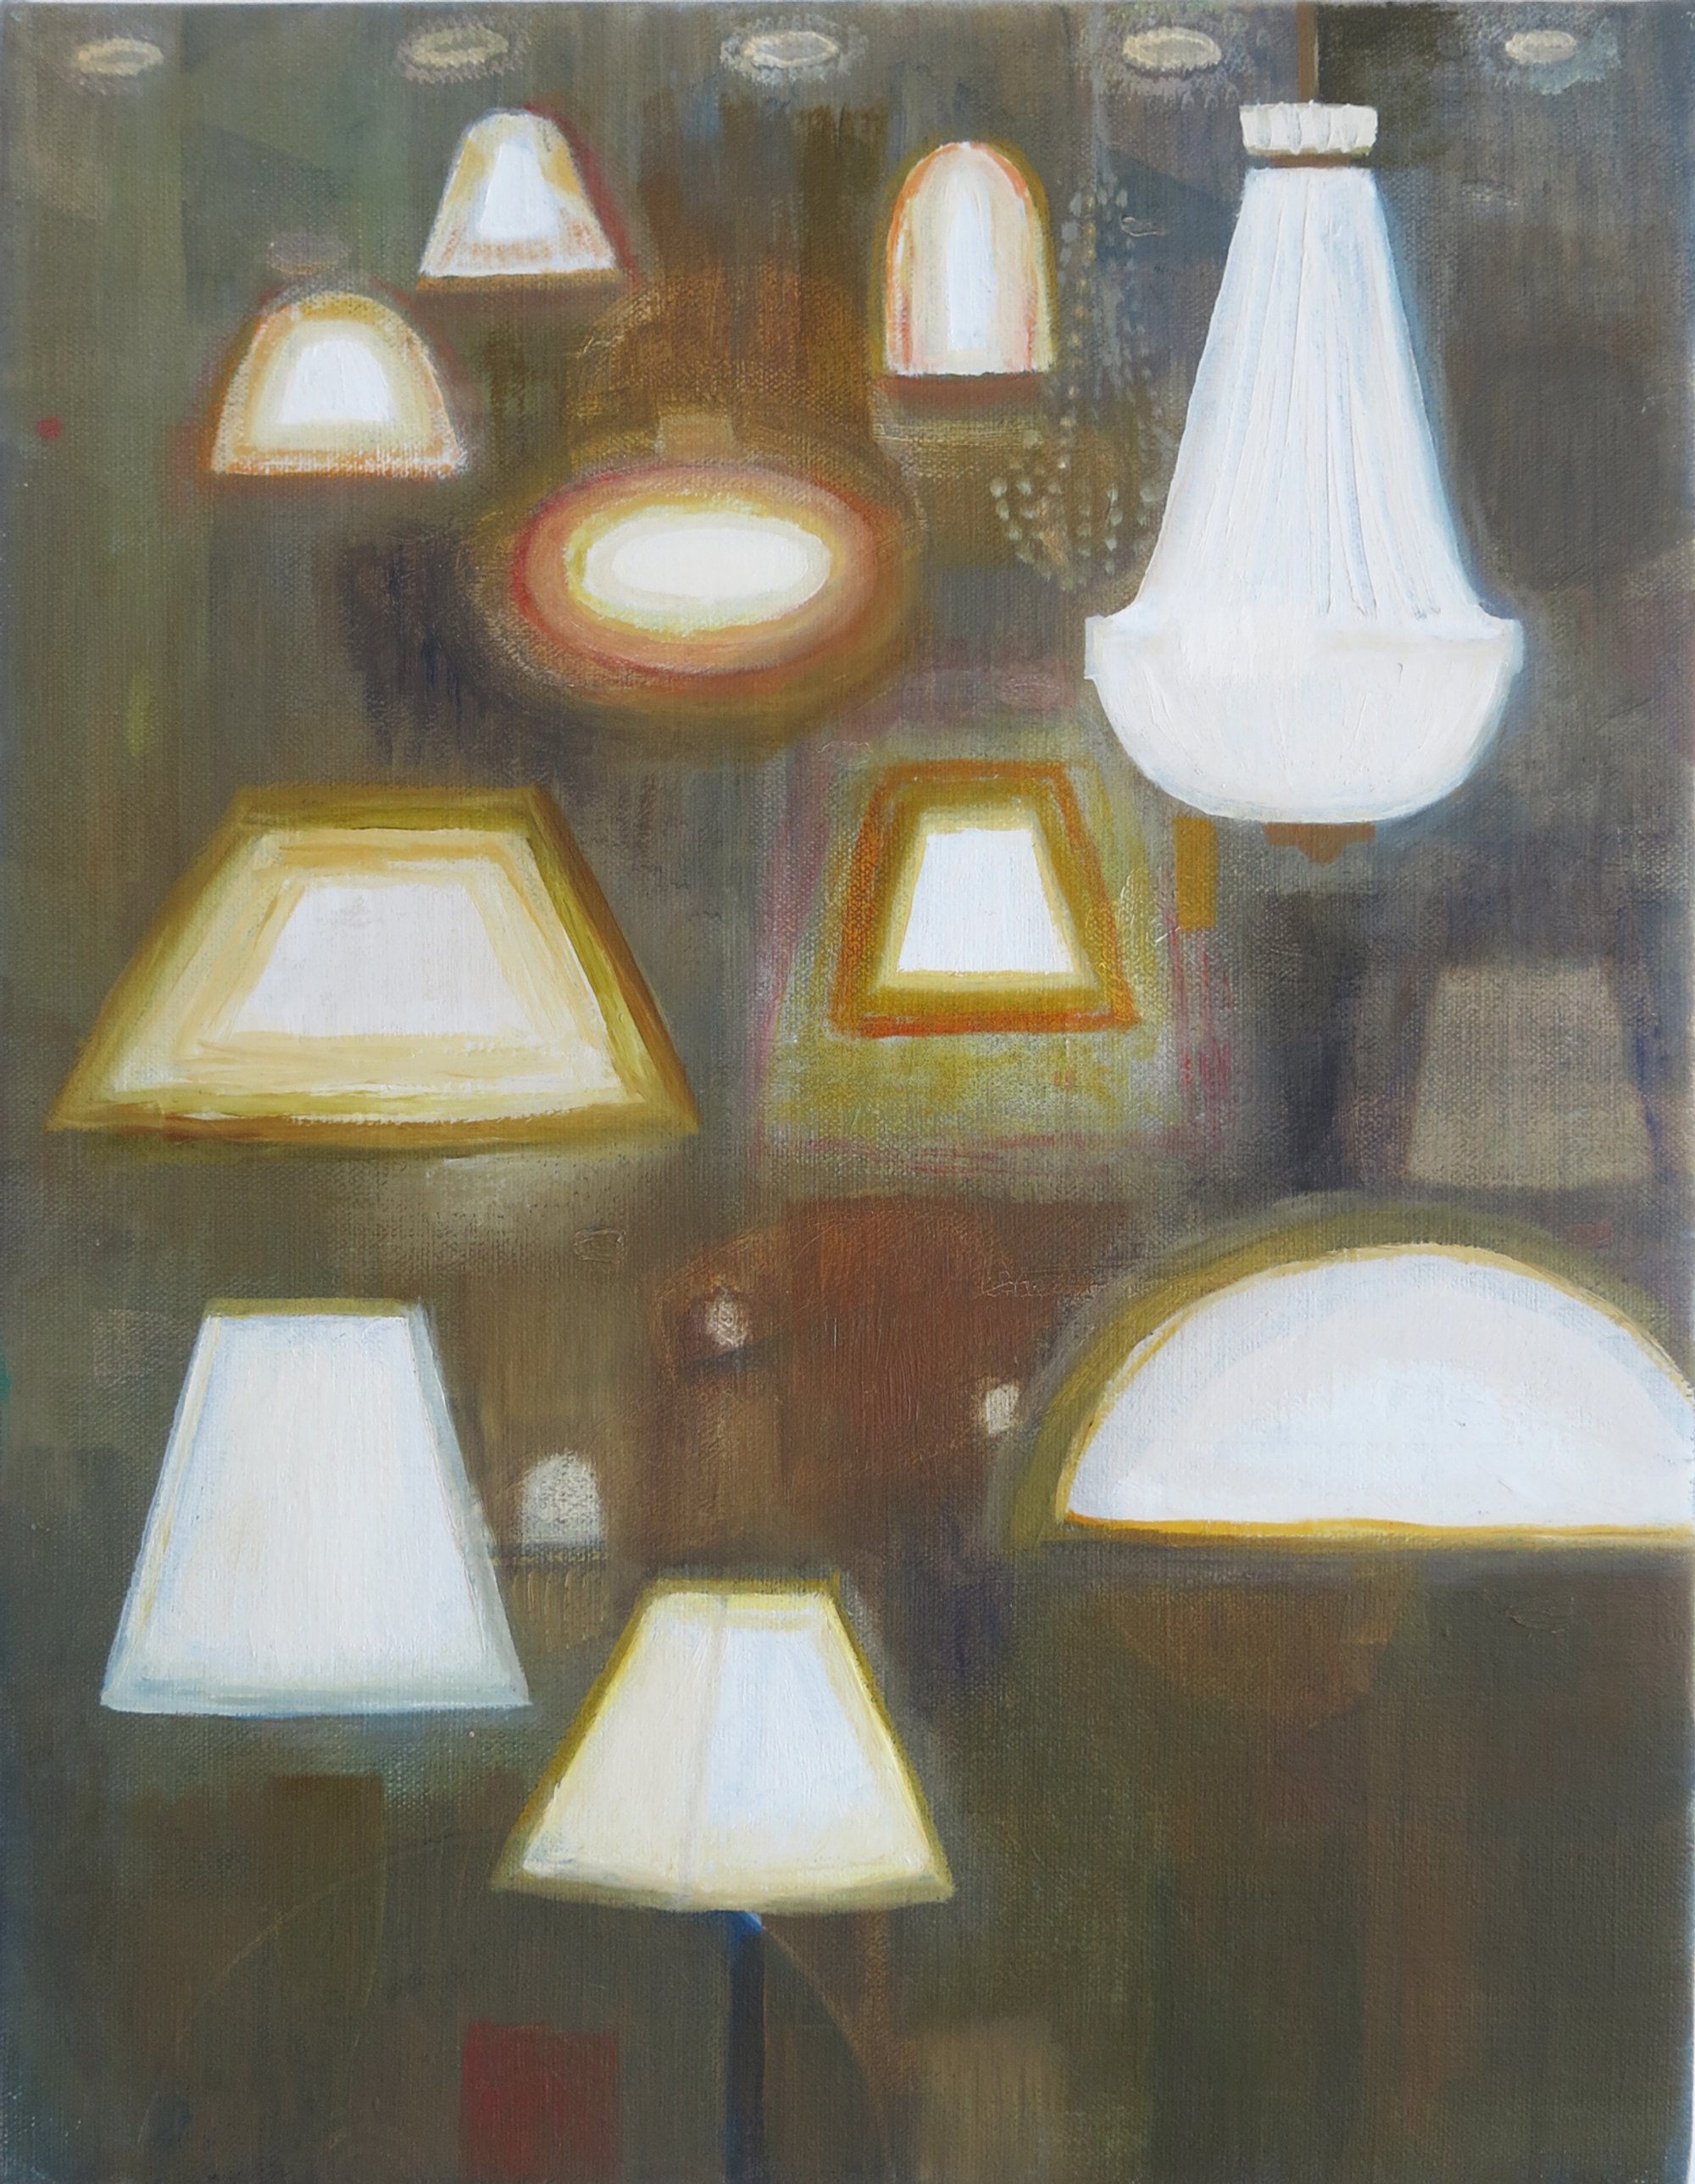   Light Shop    2023, oil on canvas, 46 x 35cm  